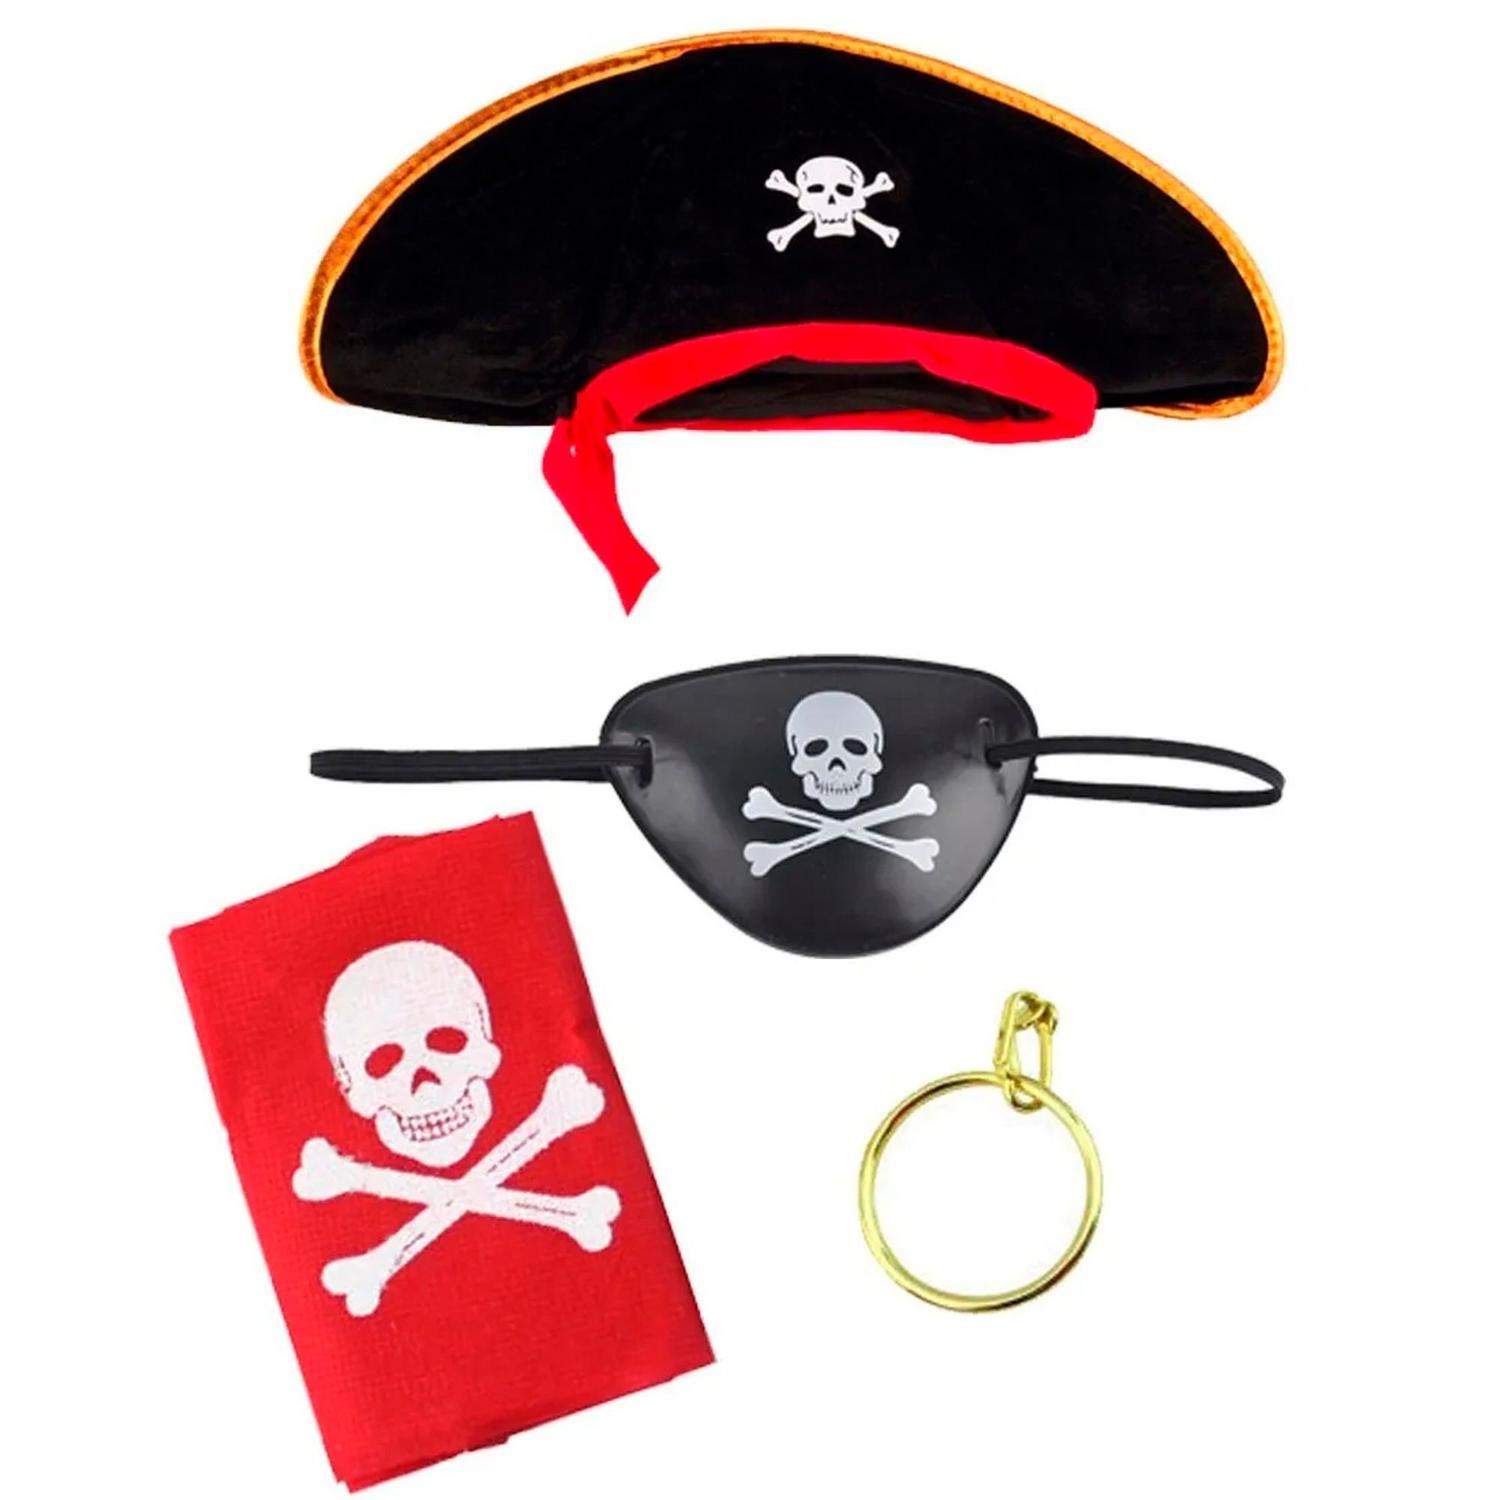 Fantasia Pirata Adulto Masculino Carnaval Halloween Zumbi Terror - Fantasias  do Ó